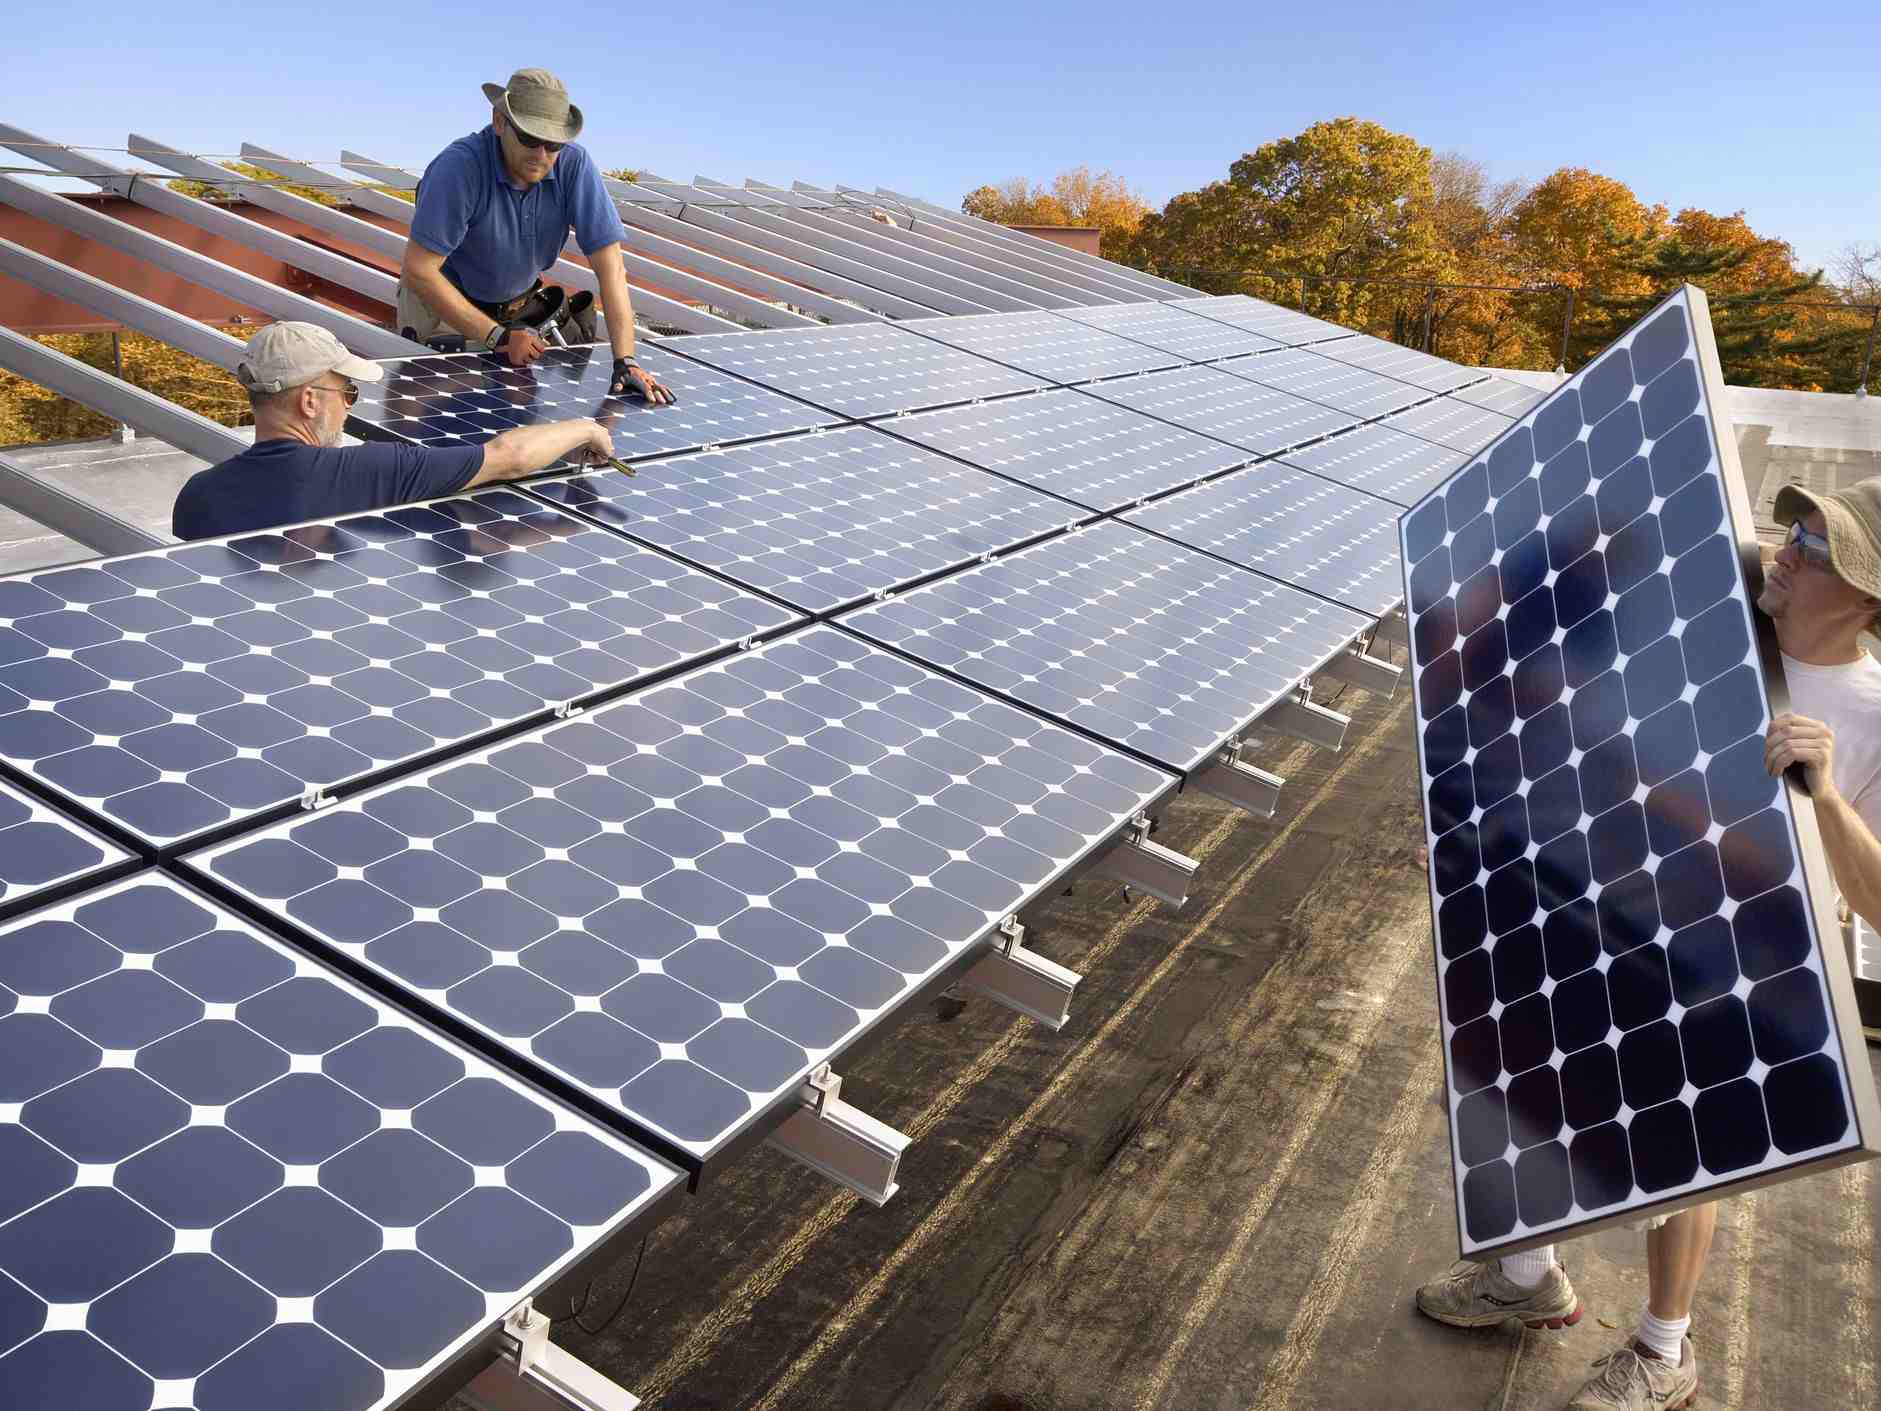 Do solar farms devalue property?